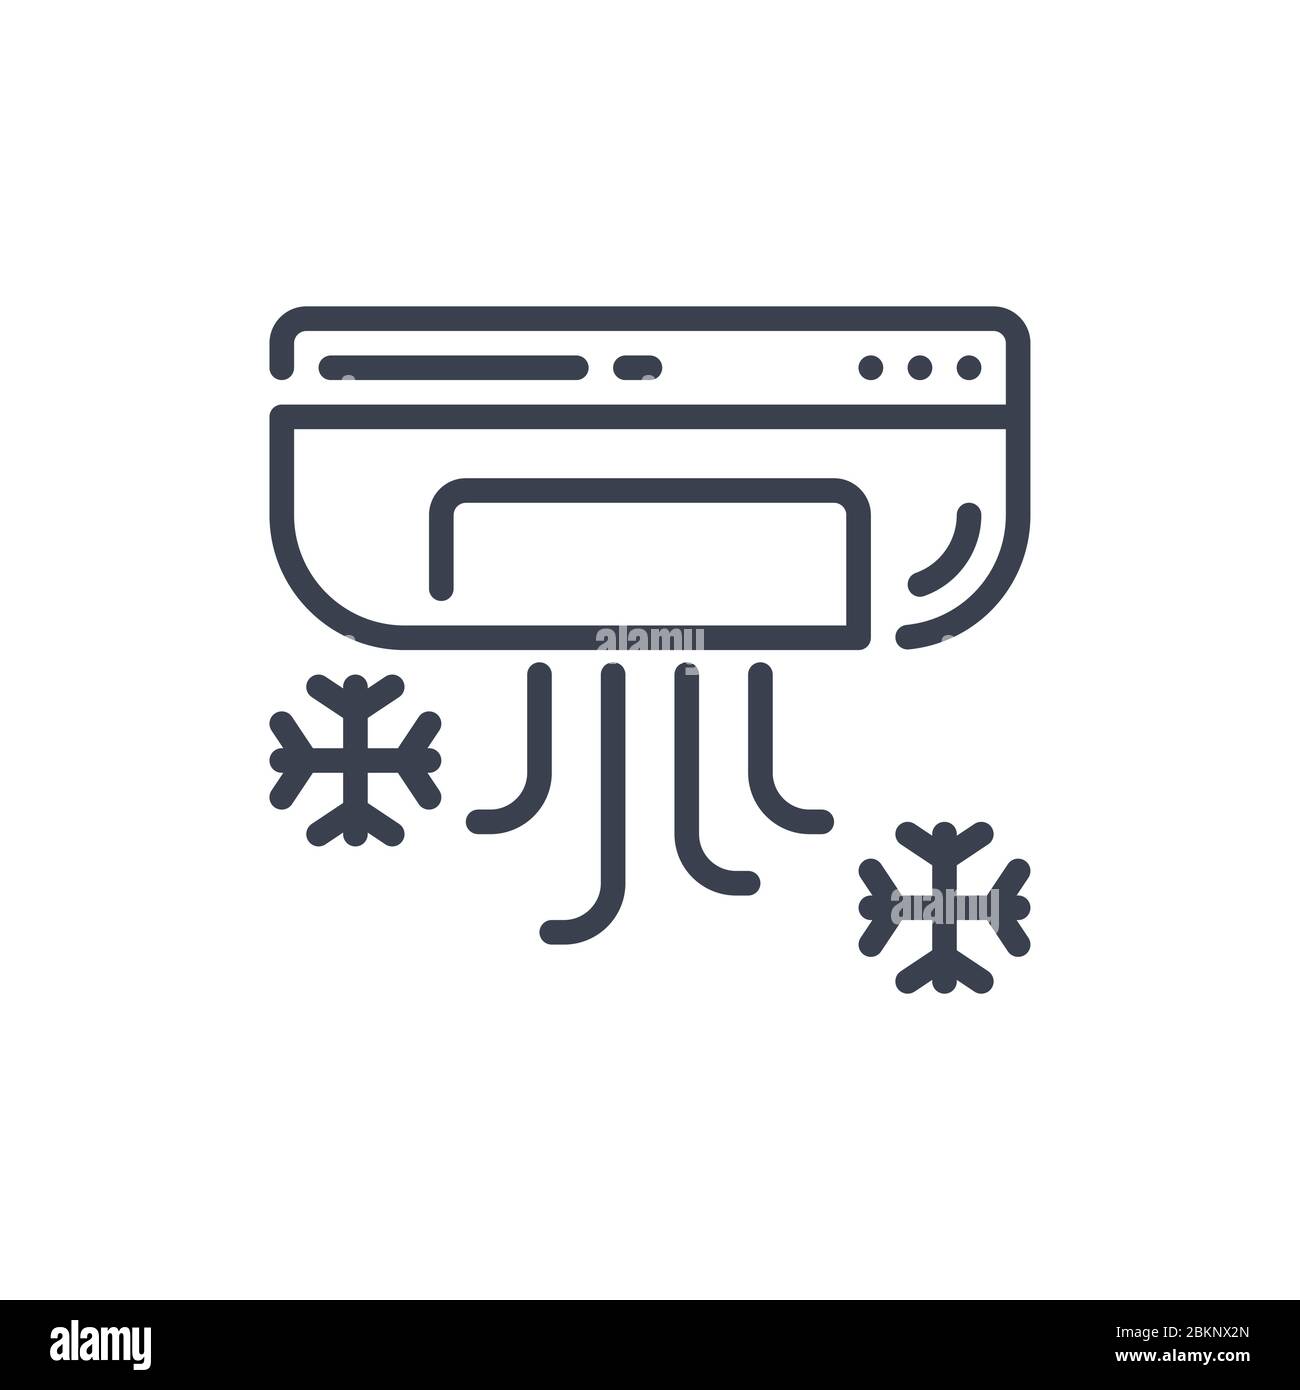 Vektor-Illustration eines Klimagerät Symbol oder Logo mit schwarzer Farbe und Linie Design-Stil Stock Vektor